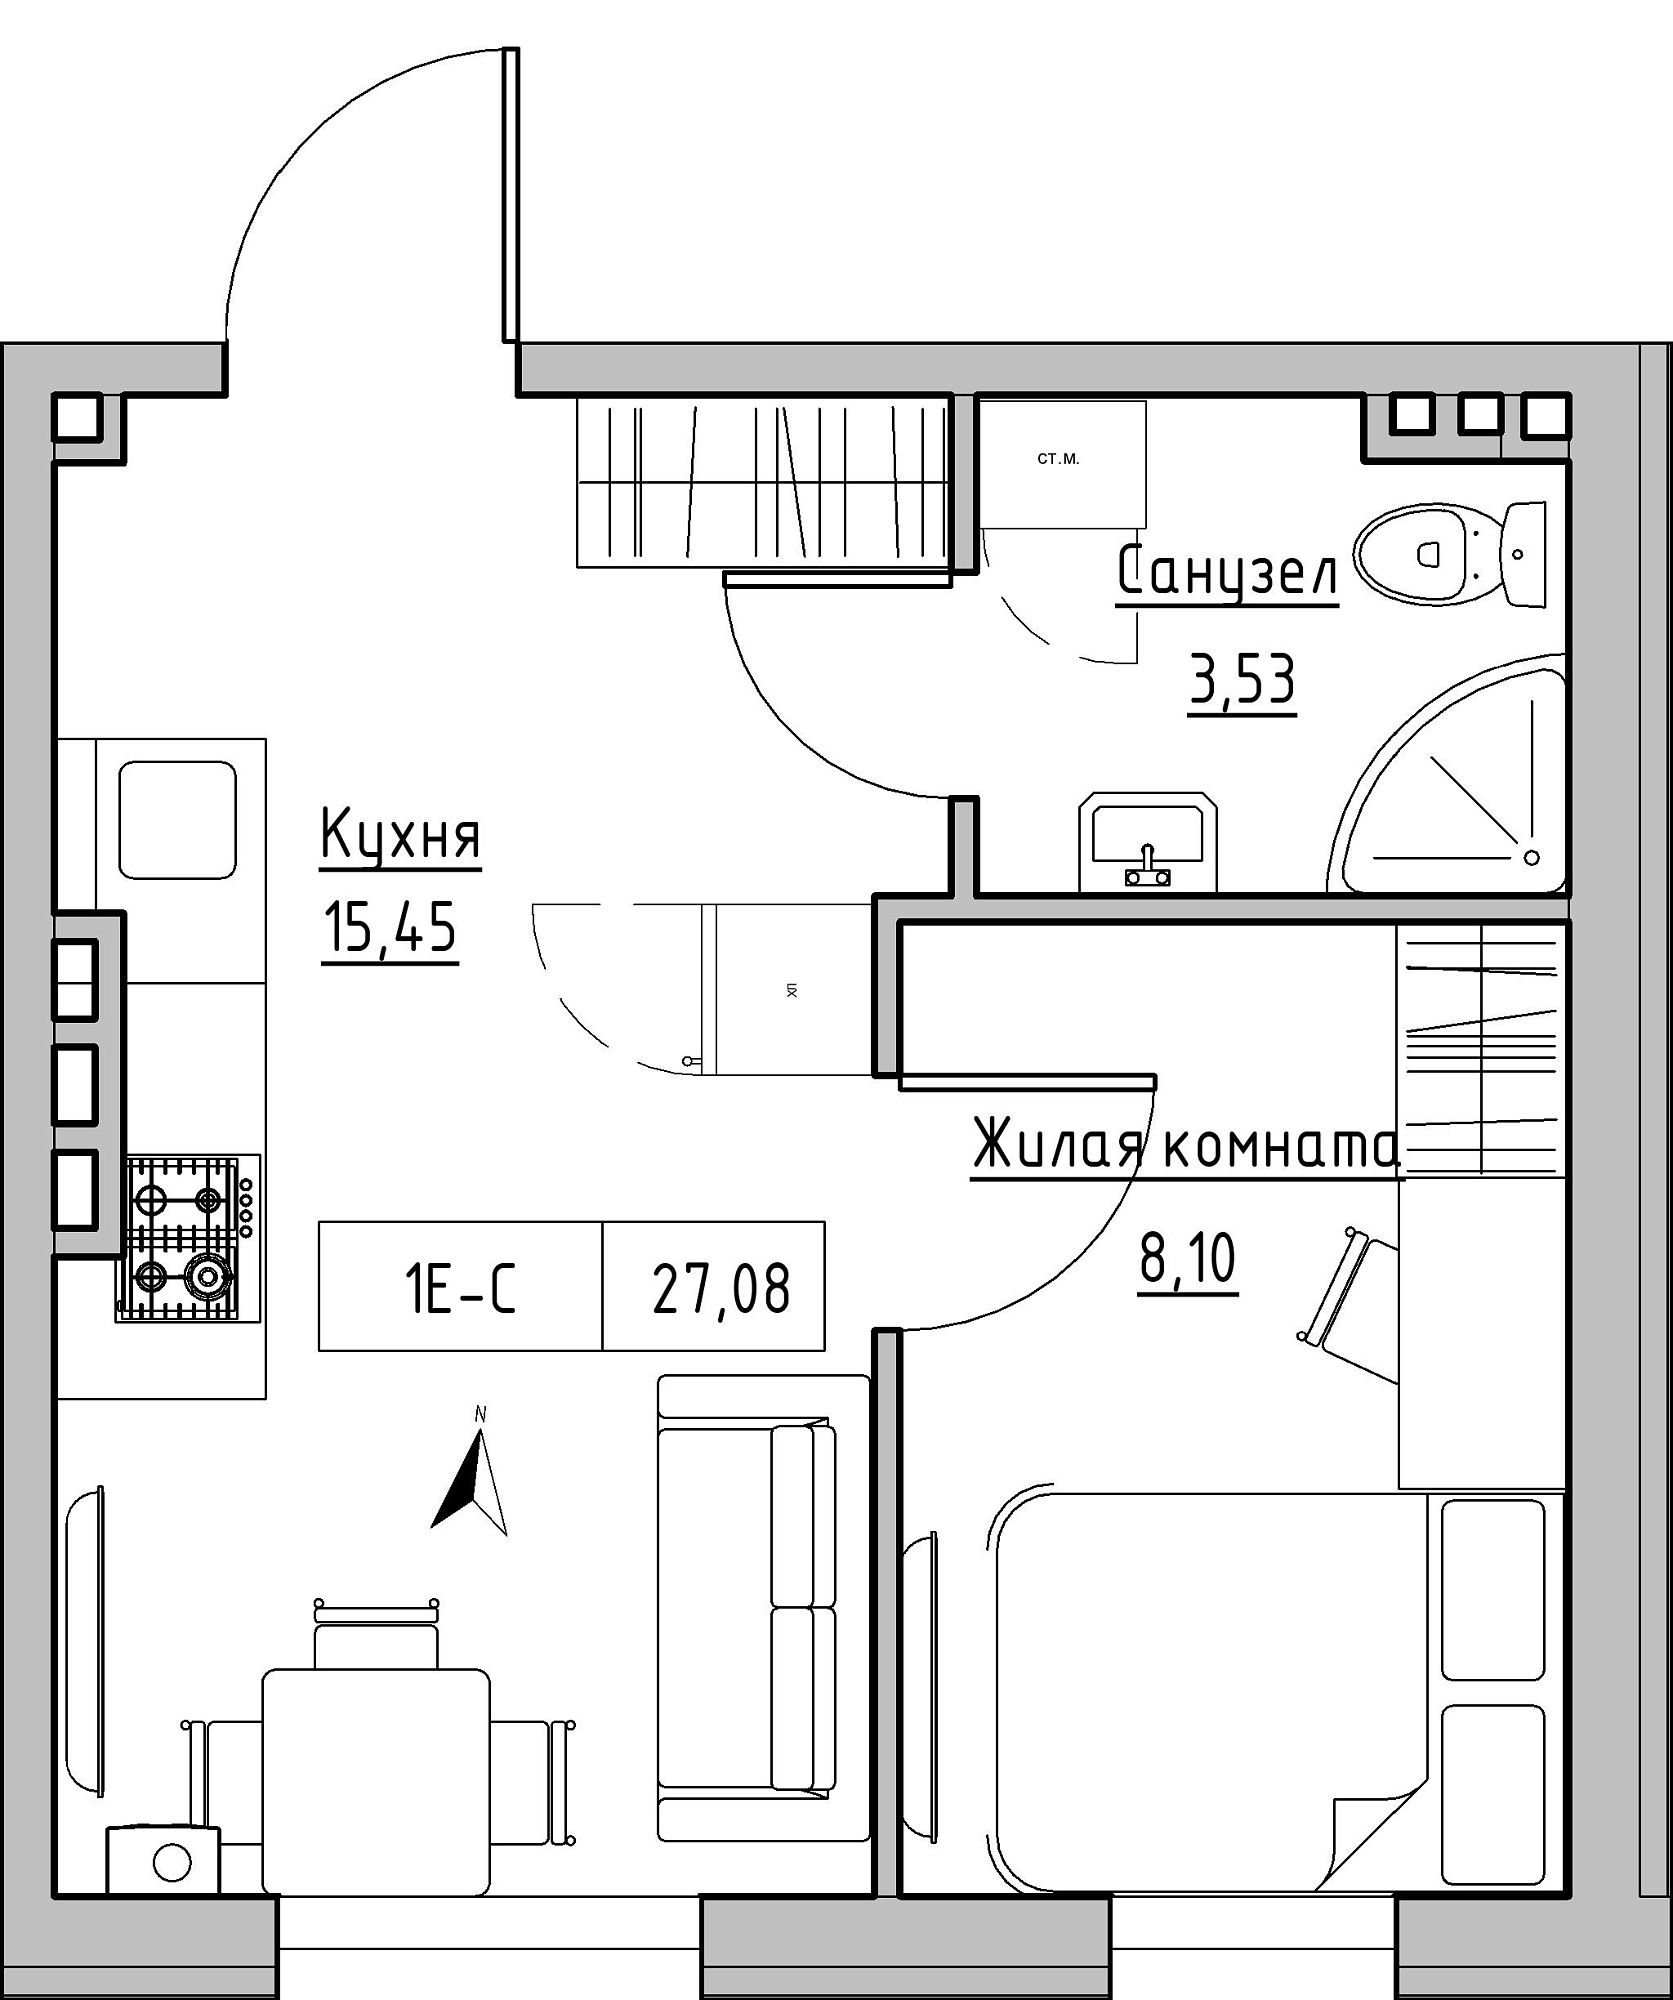 Планування 1-к квартира площею 27.08м2, KS-024-04/0004.